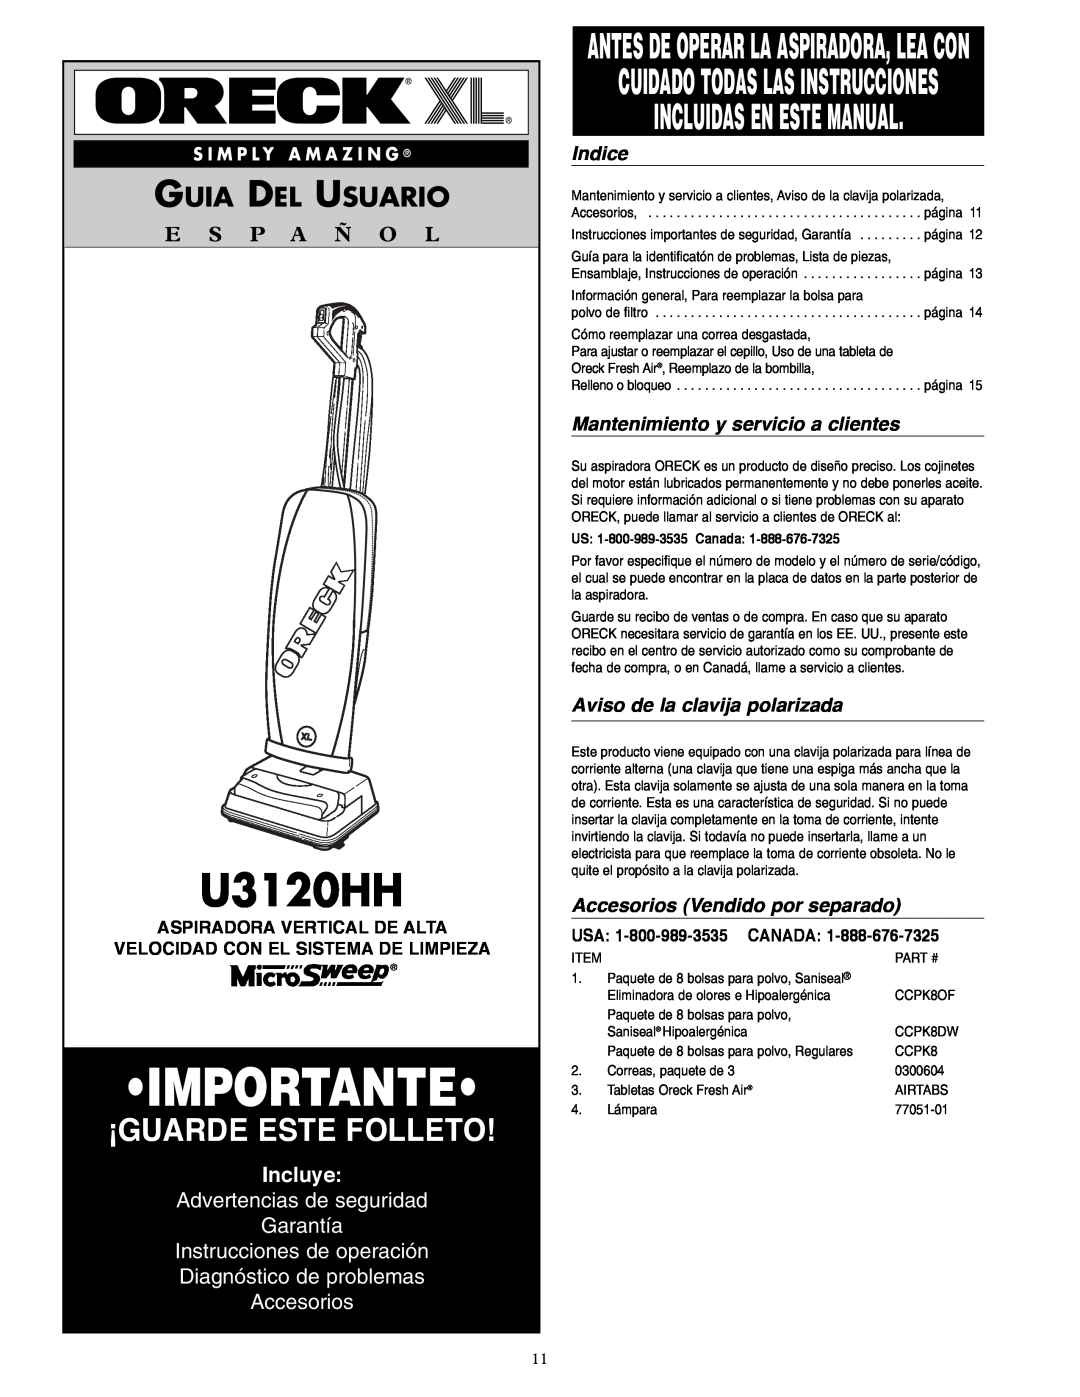 Oreck U3120HH Importante, ¡Guarde Este Folleto, Incluidas En Este Manual, Guia Del Usuario, E S P A Ñ O L, Incluye, Indice 